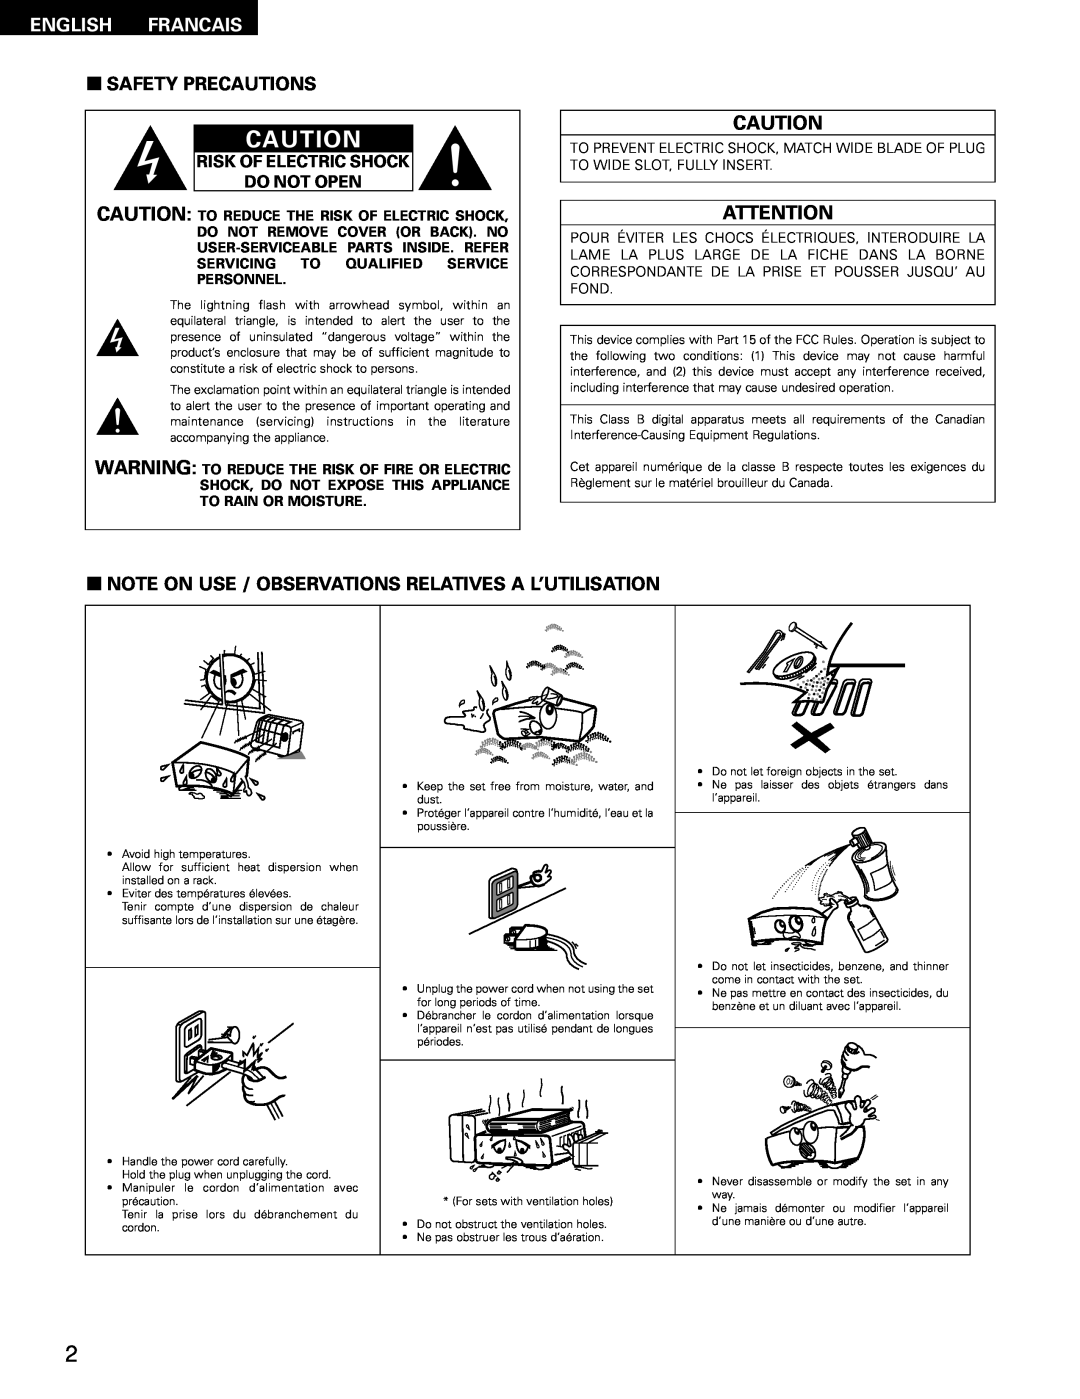 Denon AVR-1802/882 manual English Francais, 2SAFETY PRECAUTIONS, Risk Of Electric Shock Do Not Open 